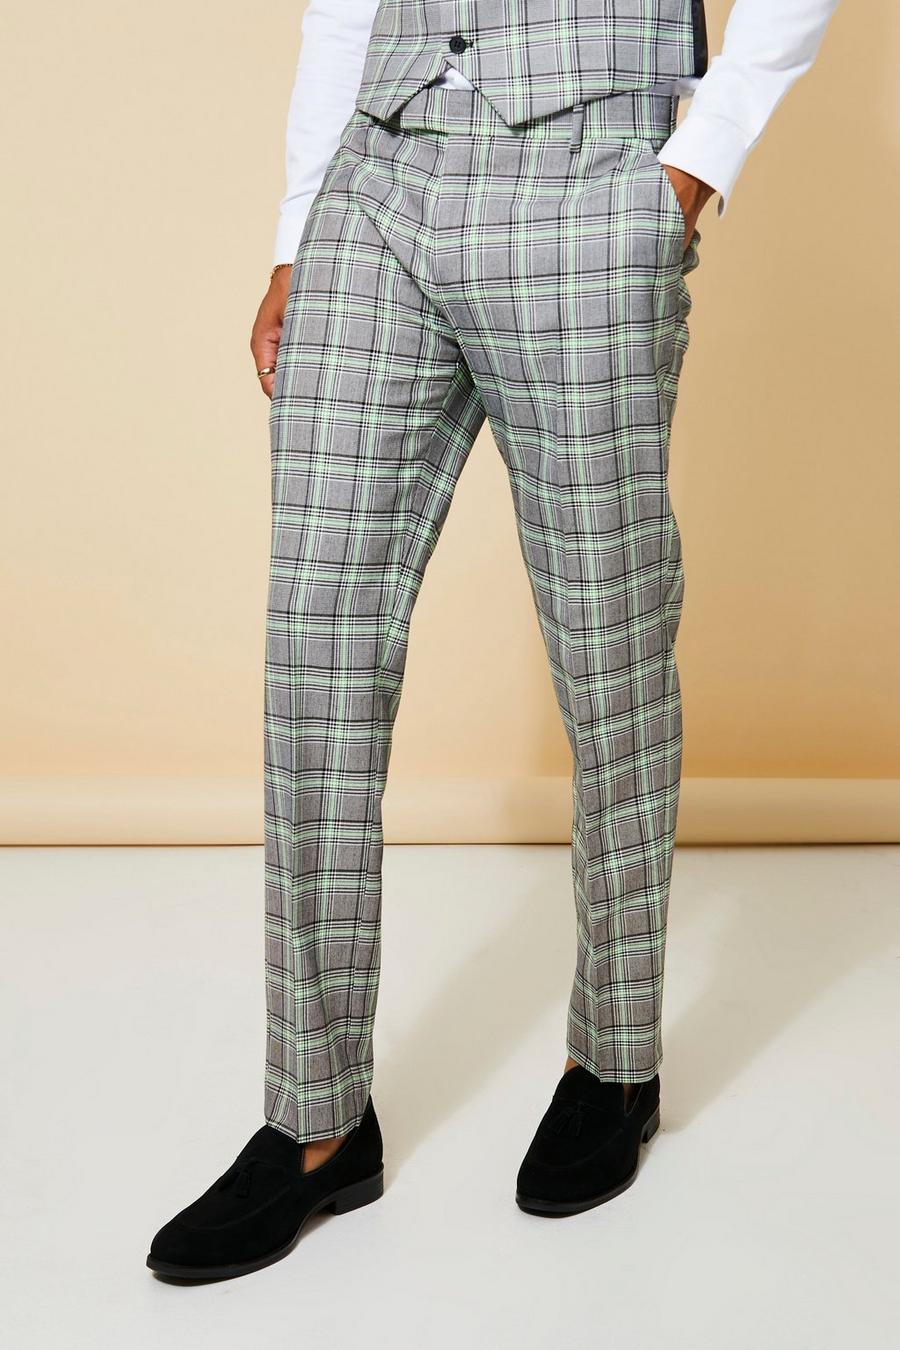 Pantaloni completo Slim Fit a quadri in colori fluo, Neon-green fosforito